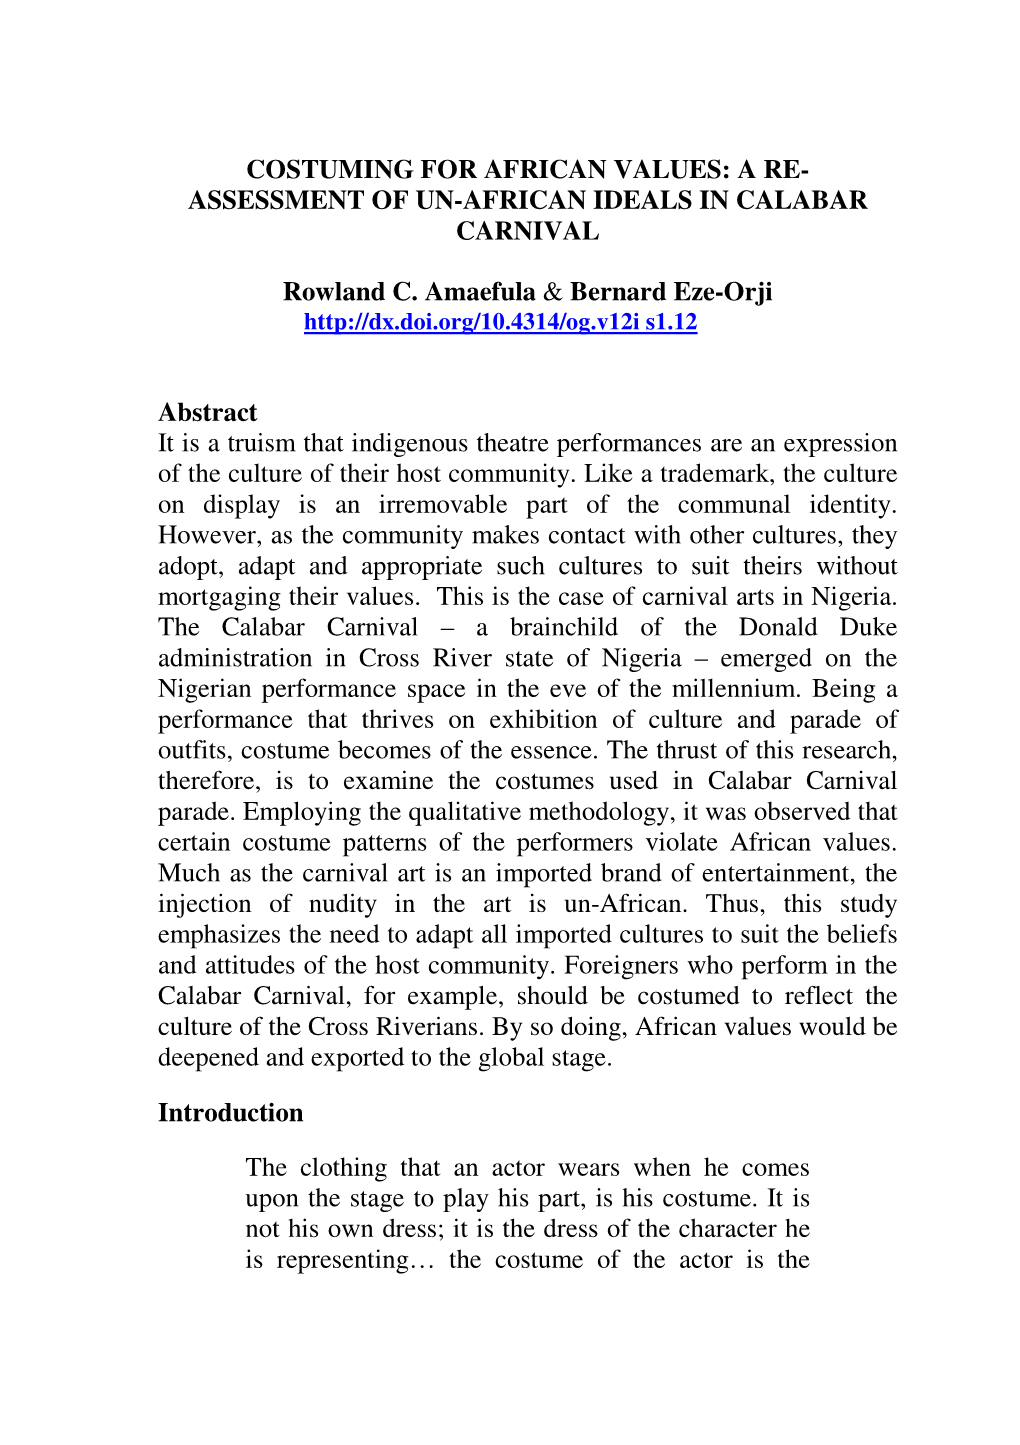 ASSESSMENT of UN-AFRICAN IDEALS in CALABAR CARNIVAL Rowland C. Amaefula & Bernard Eze-Or